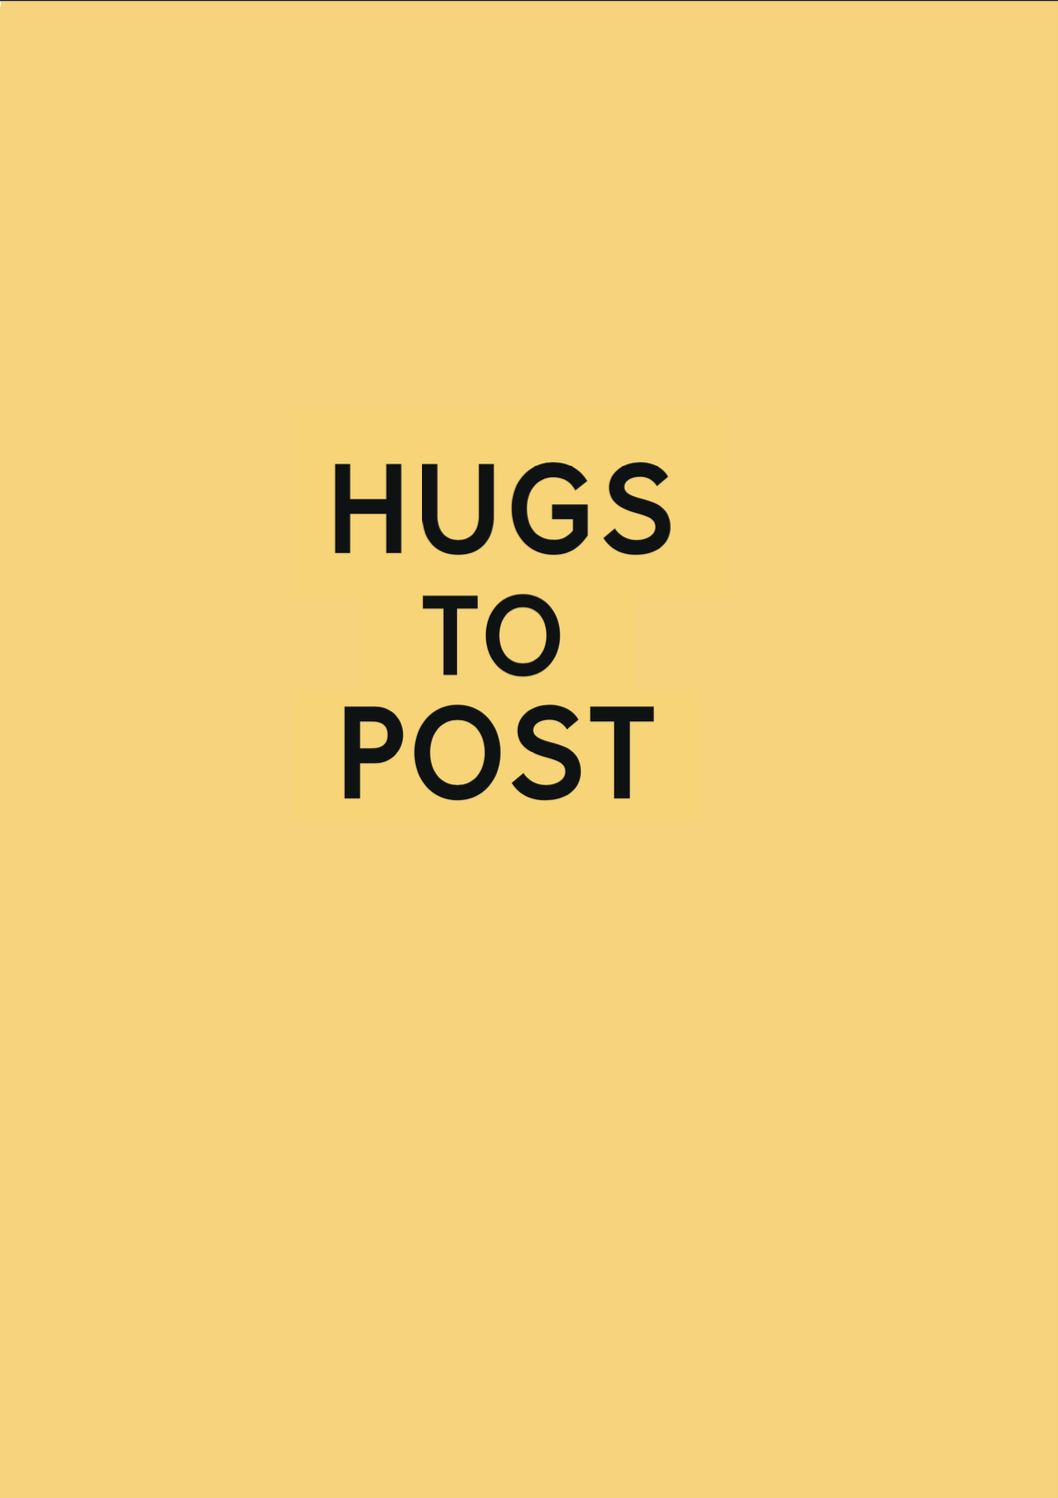 Image 3: HUGS TO POST